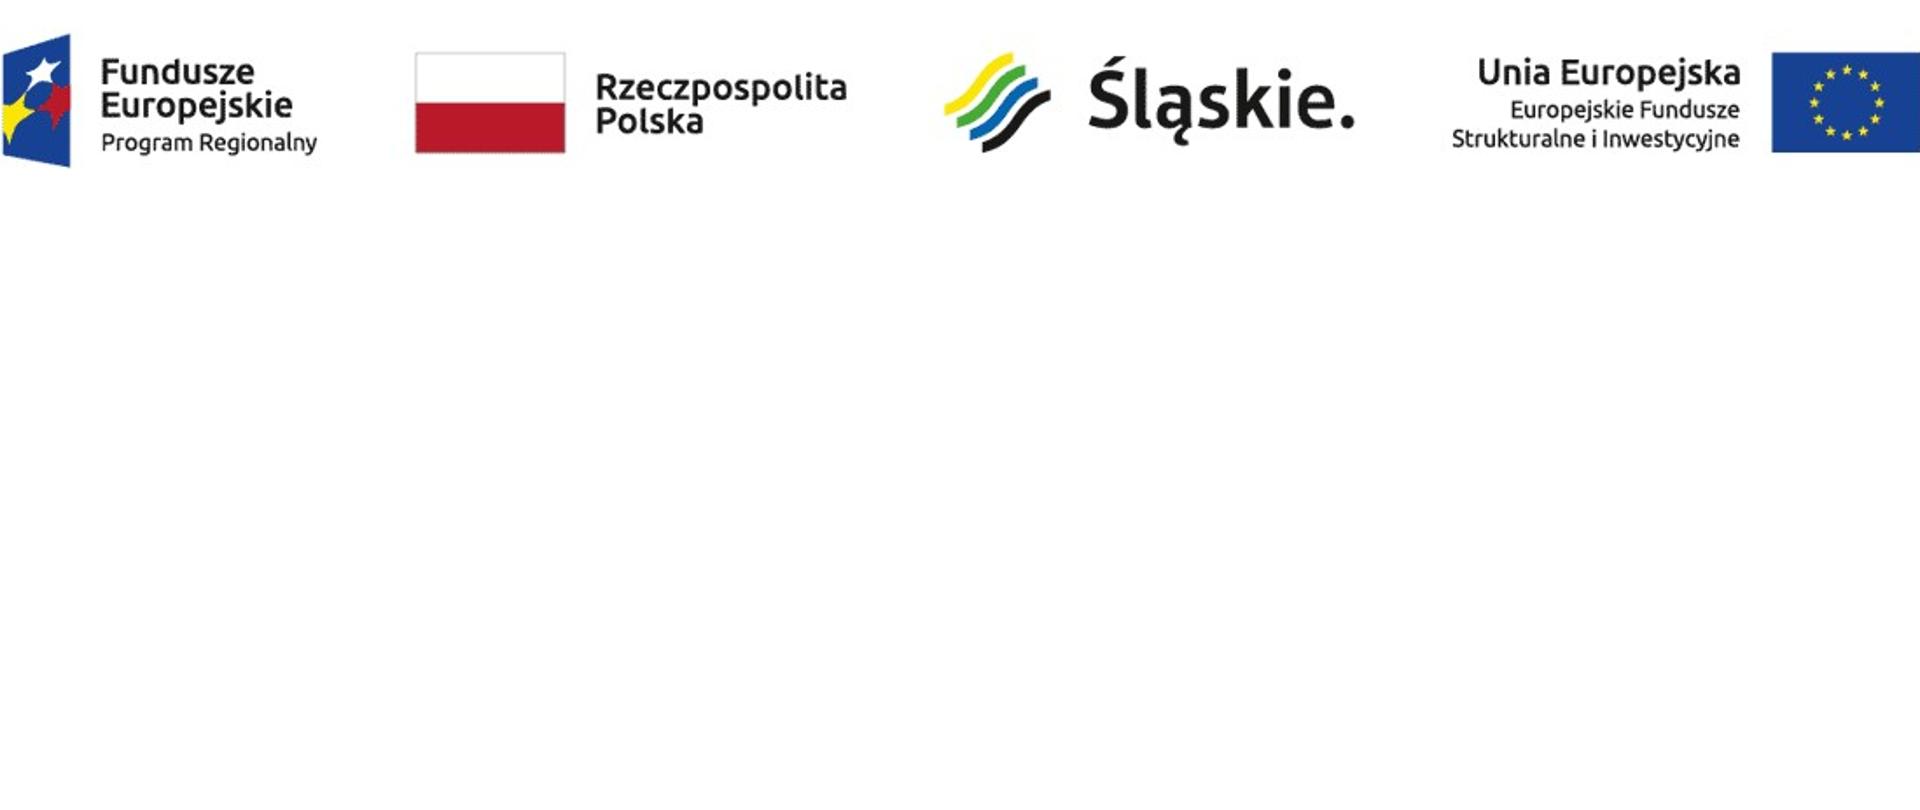 Od lewej do prawej strony loga: Fundusze Europejskie Program Regionalny, Rzeczpospolita Polska, Śląskie, Unia Europejska - Europejskie Fundusze Strukturalne i Inwestycyjne